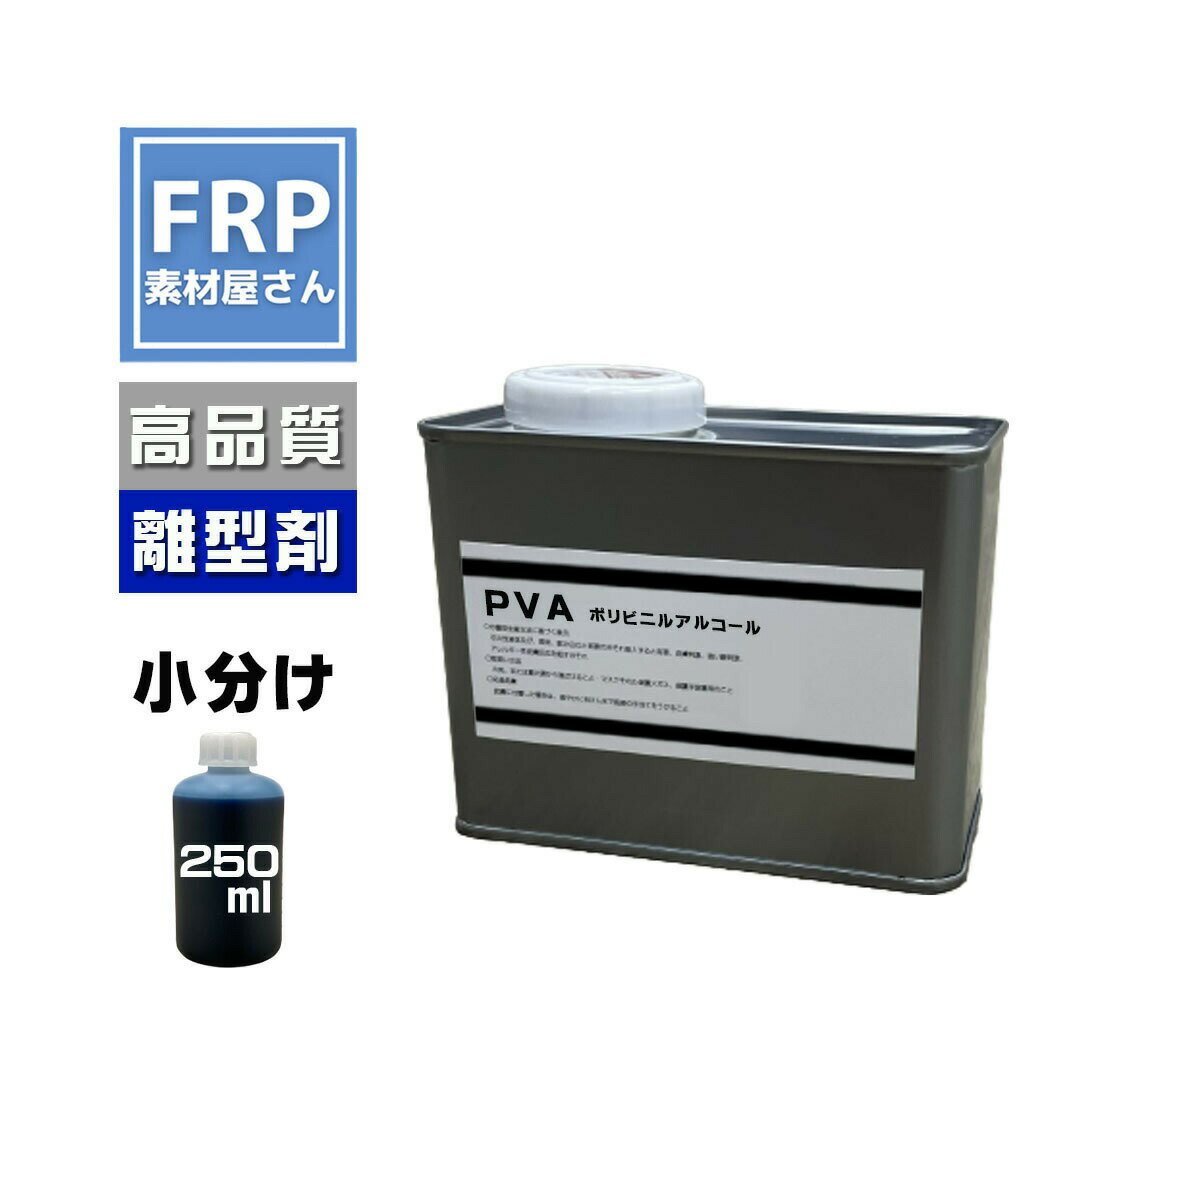 FRP 液体離型剤【 PVA (250ml)】ブルー 青/FRP樹脂 剥離剤 型取り 液体タイプ ポリビニルアルコール系